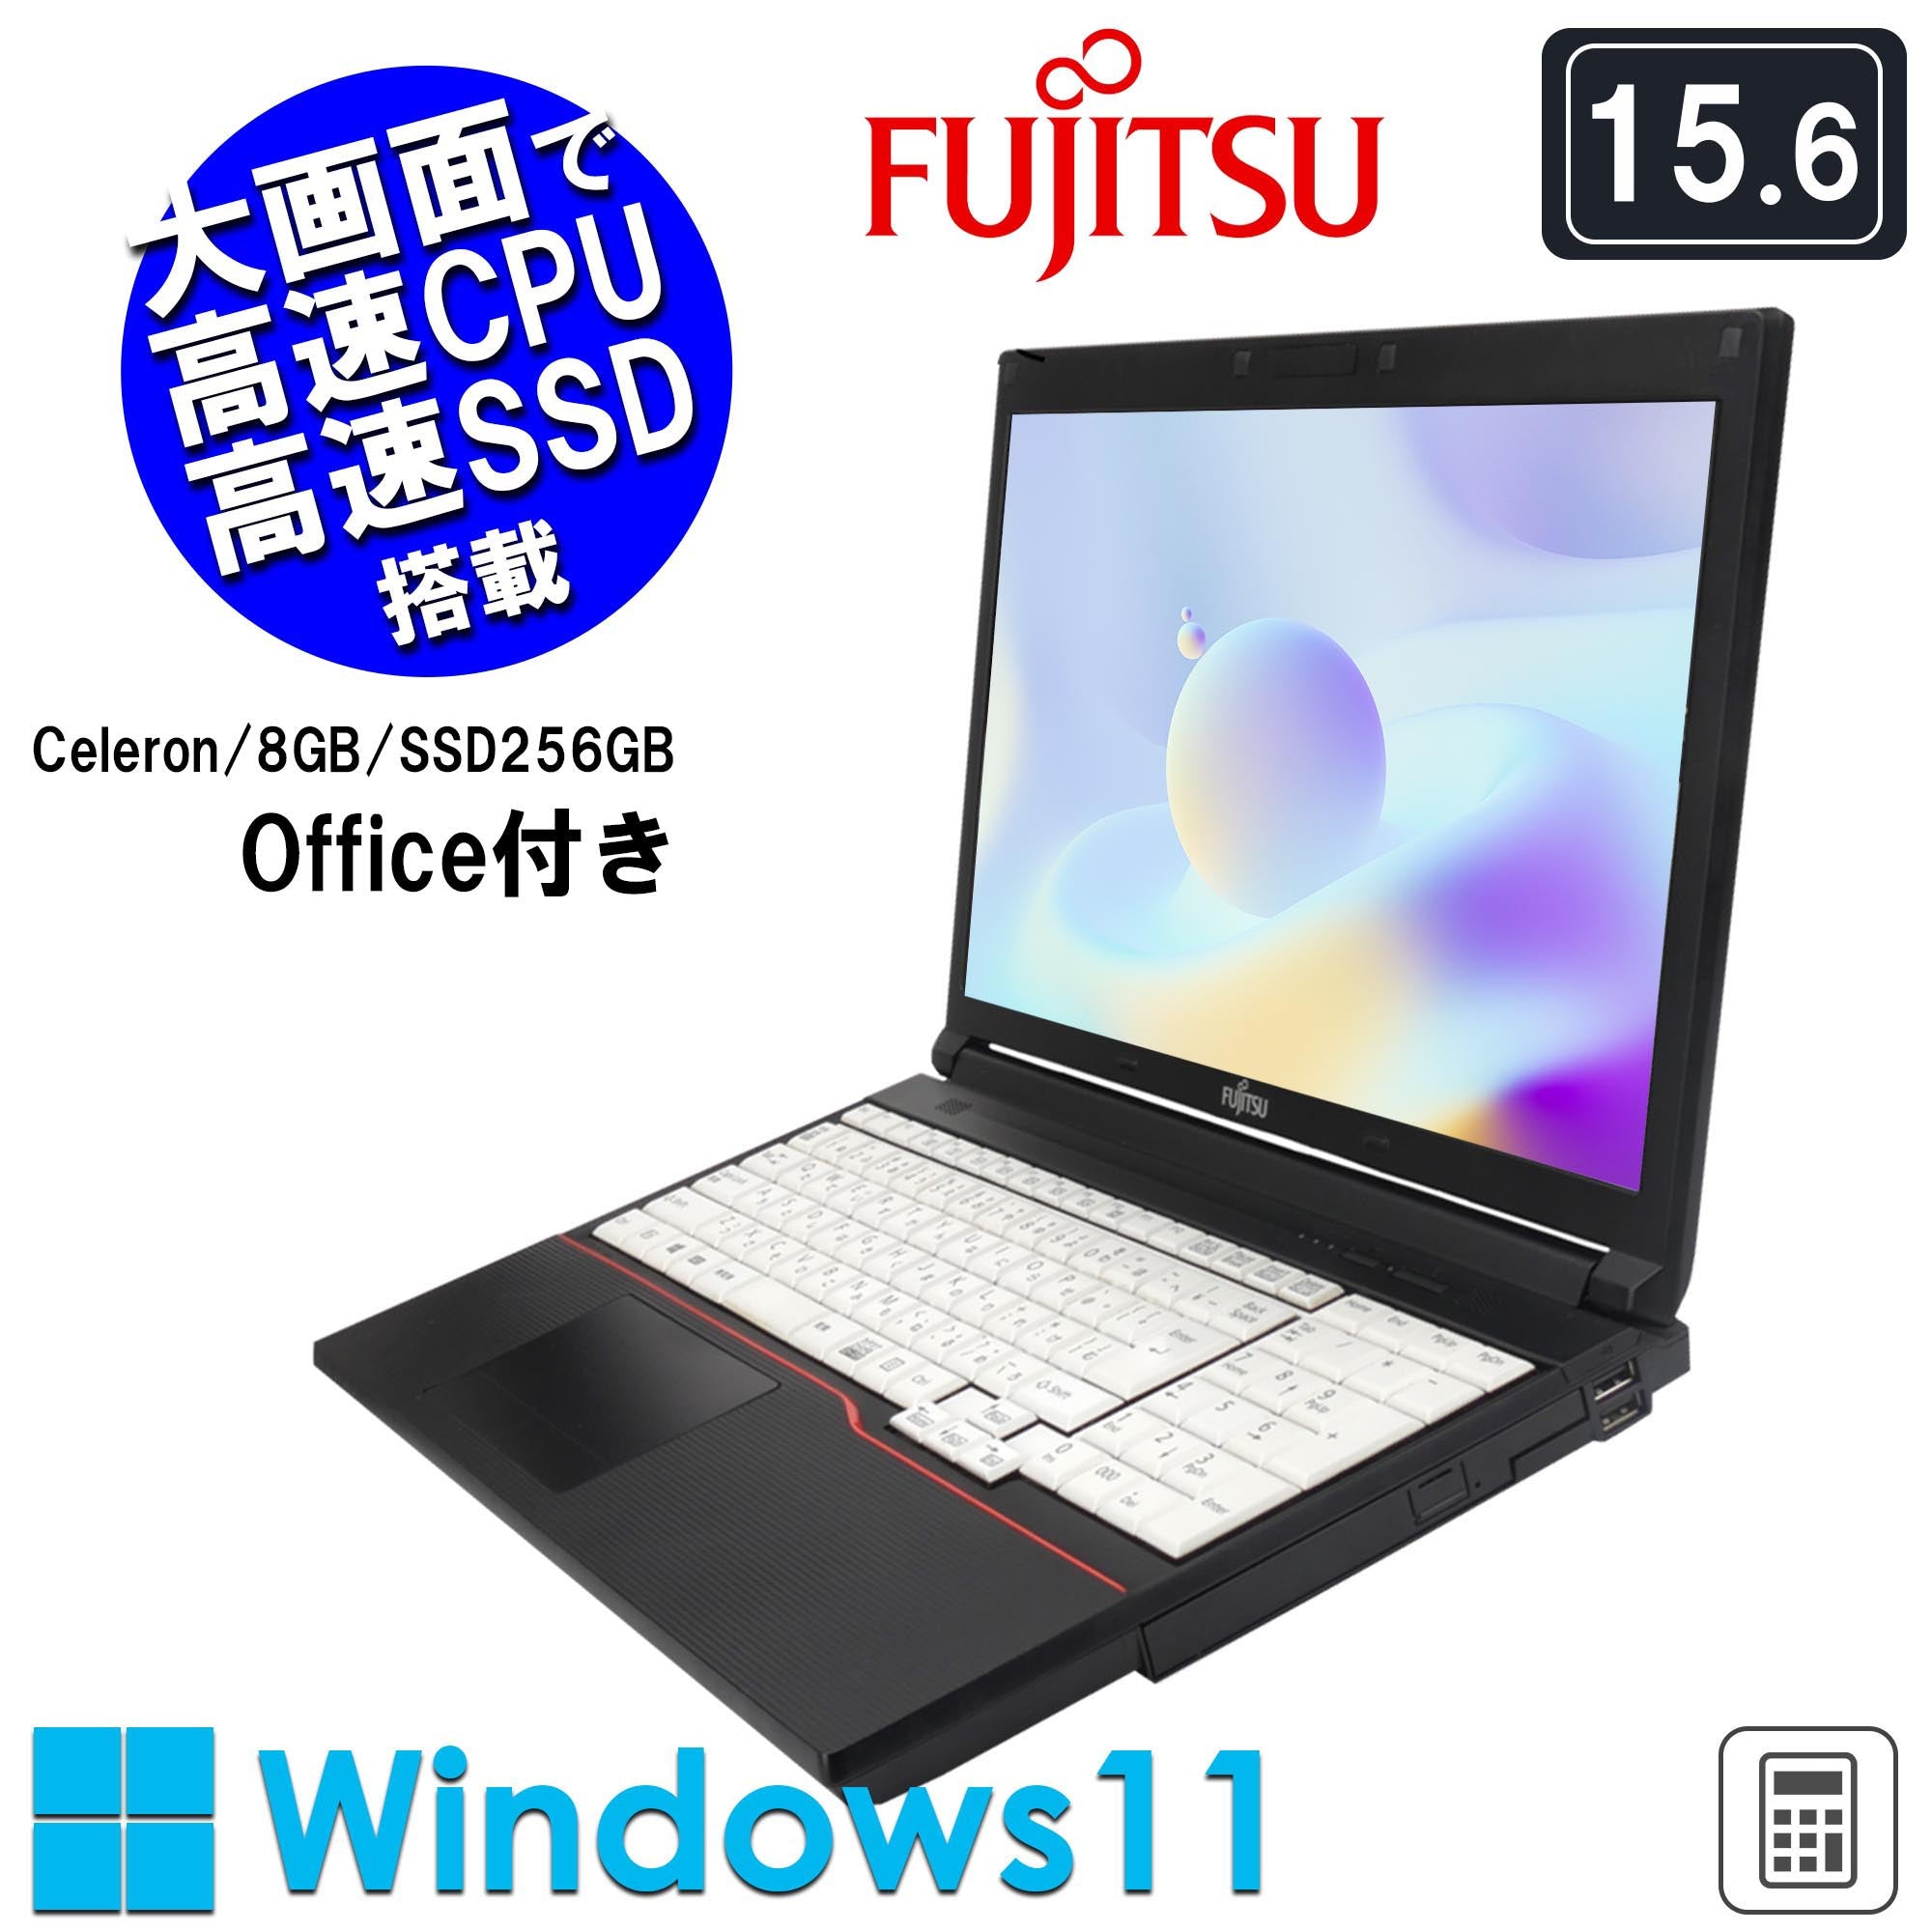 《富士通 15.6型 中古ノートPC》Office付き Windows11 Celeron 3855U メモリ8GB SSD256GB テンキー付き